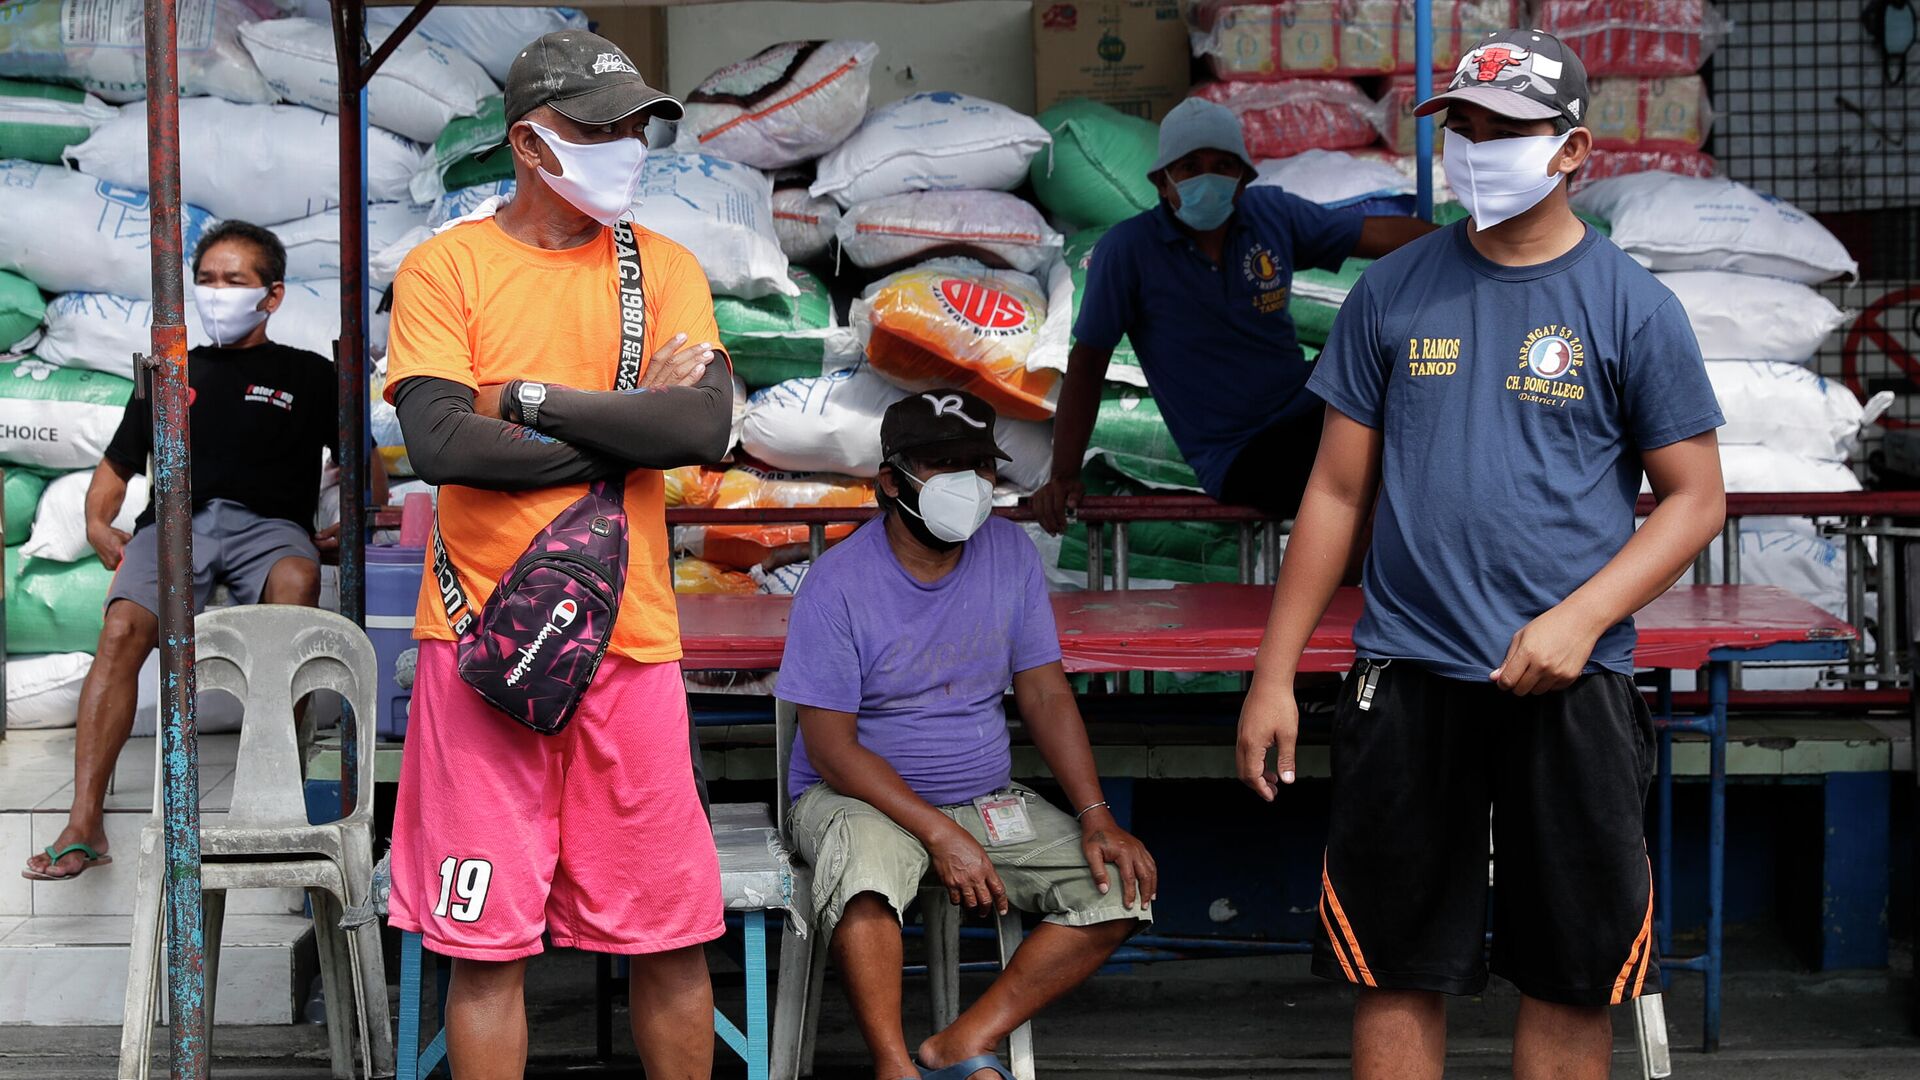 Местные жители в защитных масках на улице Манилы, Филиппины - РИА Новости, 1920, 13.01.2021